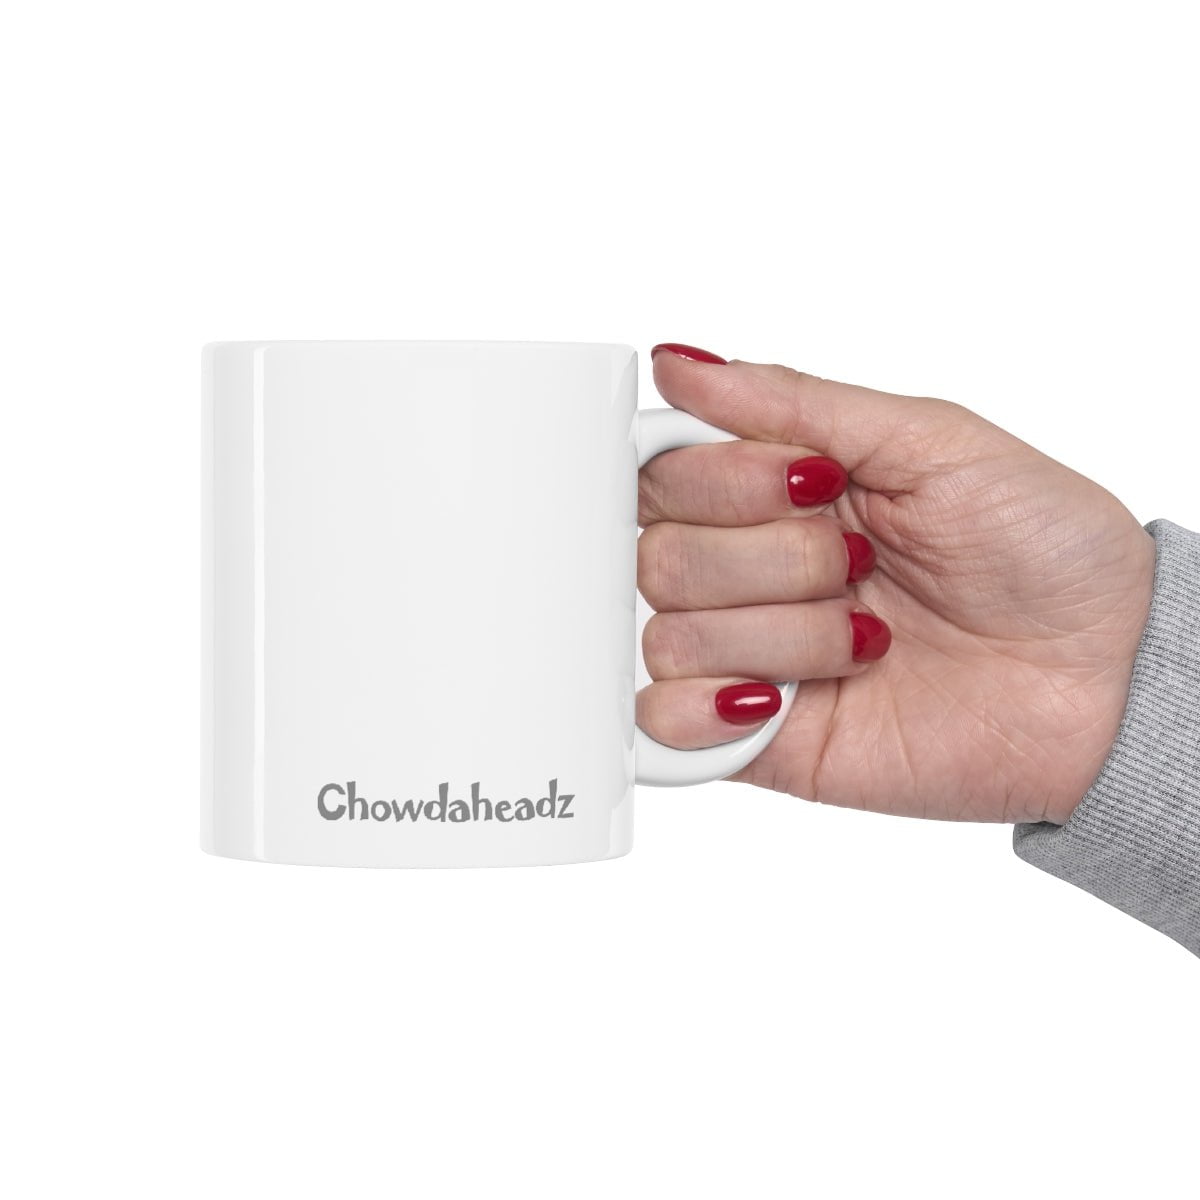 ThankFULL 11oz Coffee Mug - Chowdaheadz